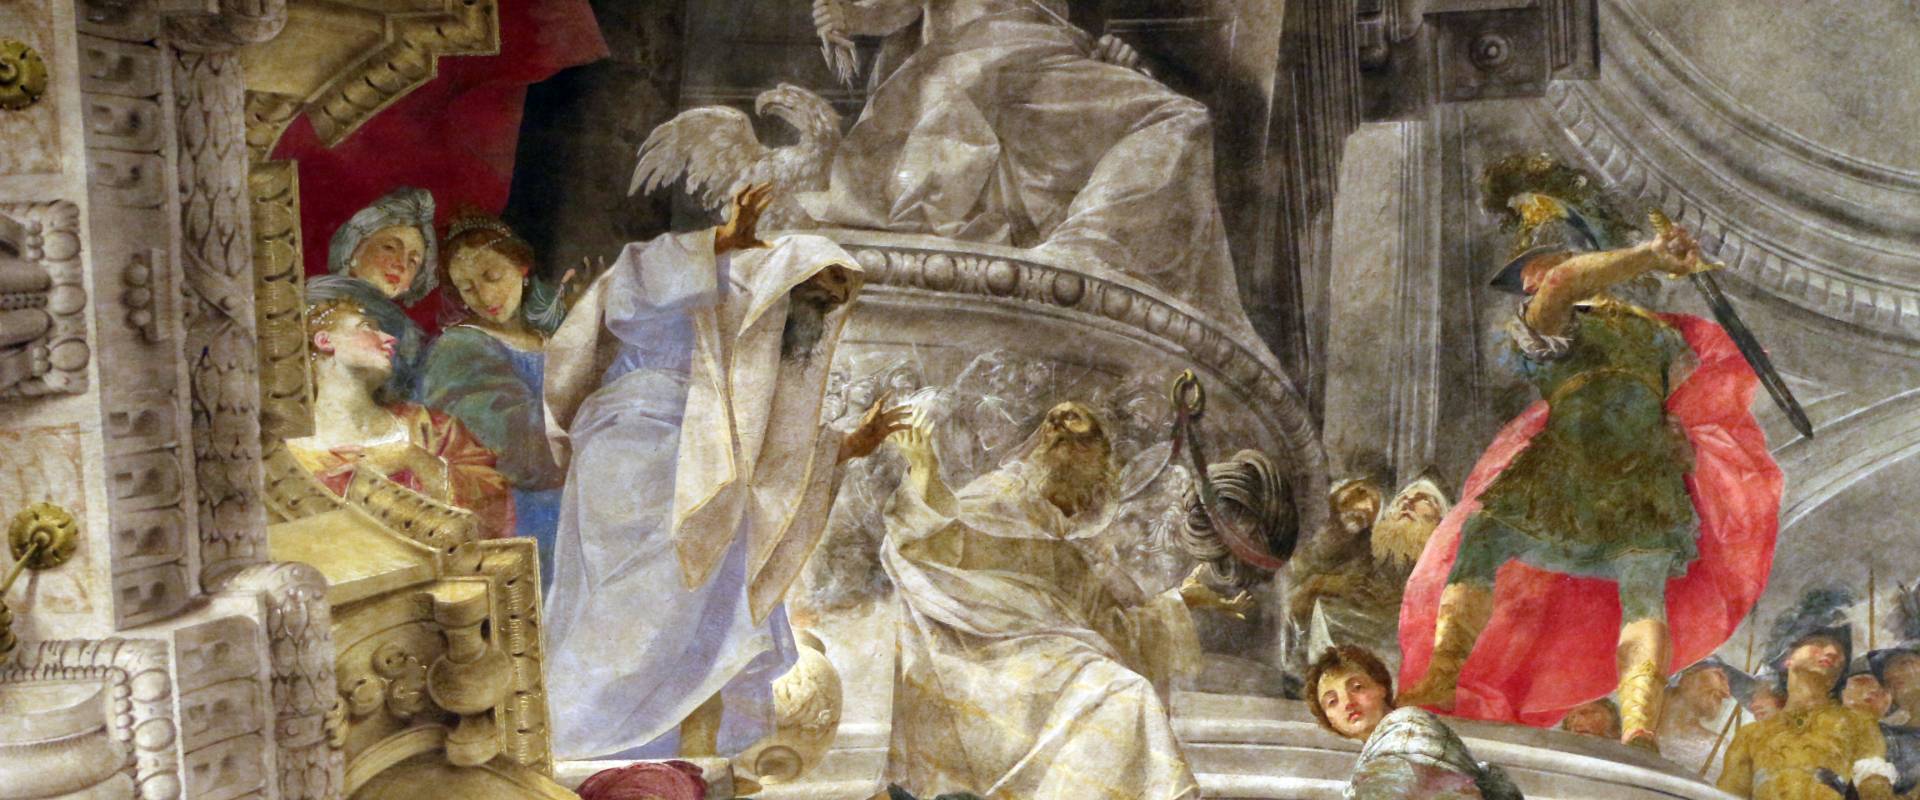 Donato creti, alessandro taglia il nodo gordiano, 1708-10, palazzo pepoli 04 foto di Sailko